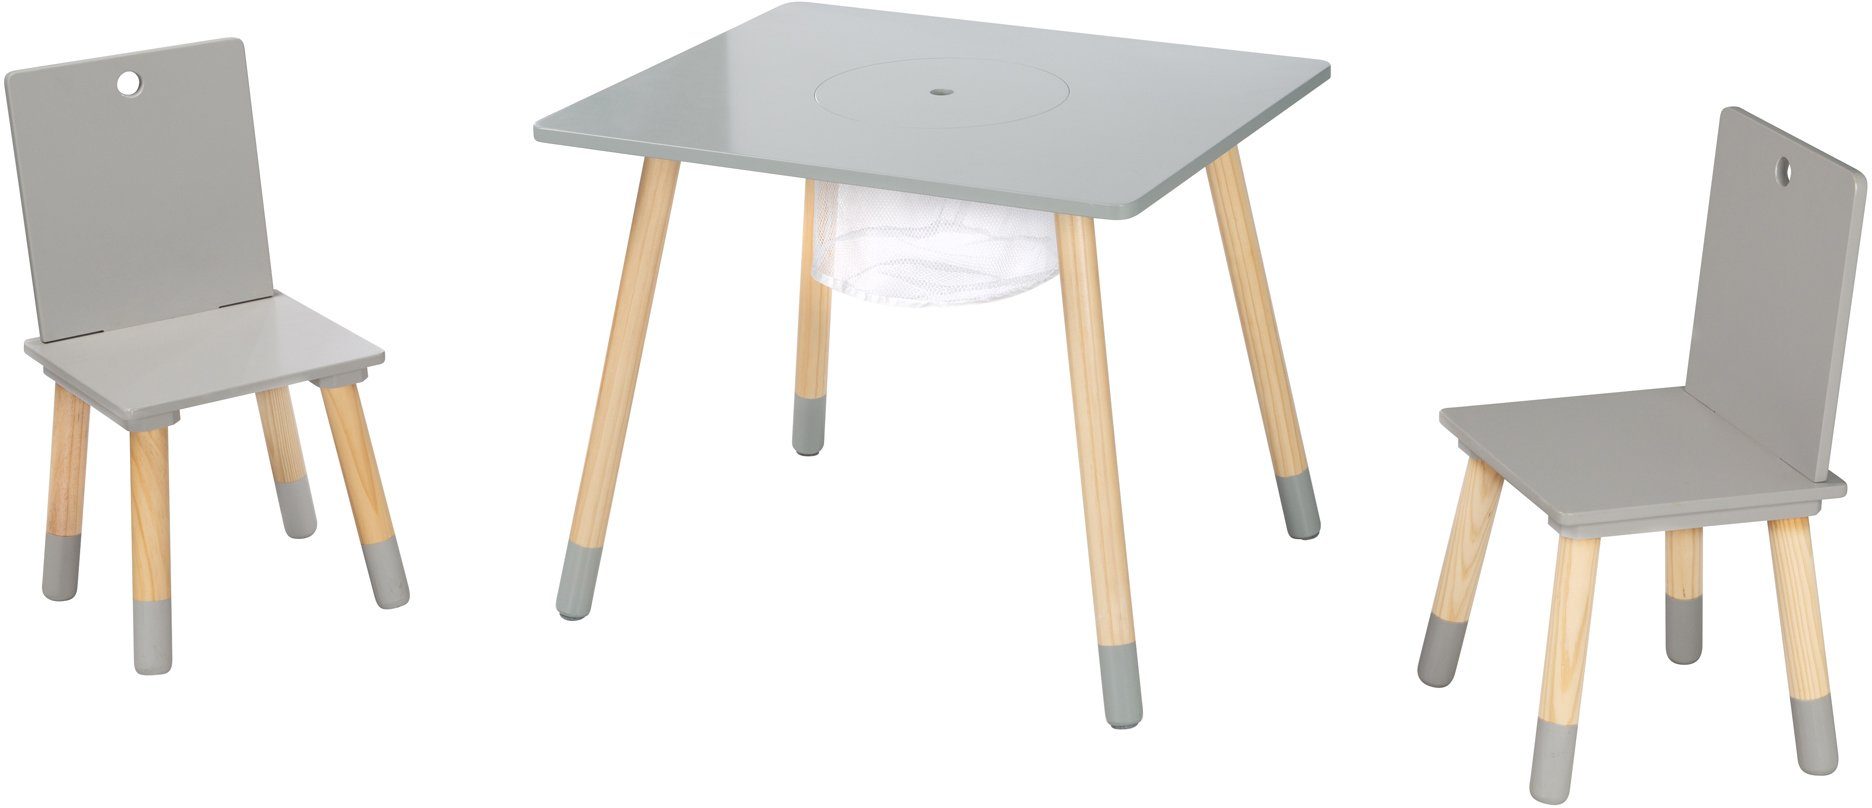 roba® Kindersitzgruppe Sitzgruppe mit Aufbewahrungsnetz, Holz aus grau